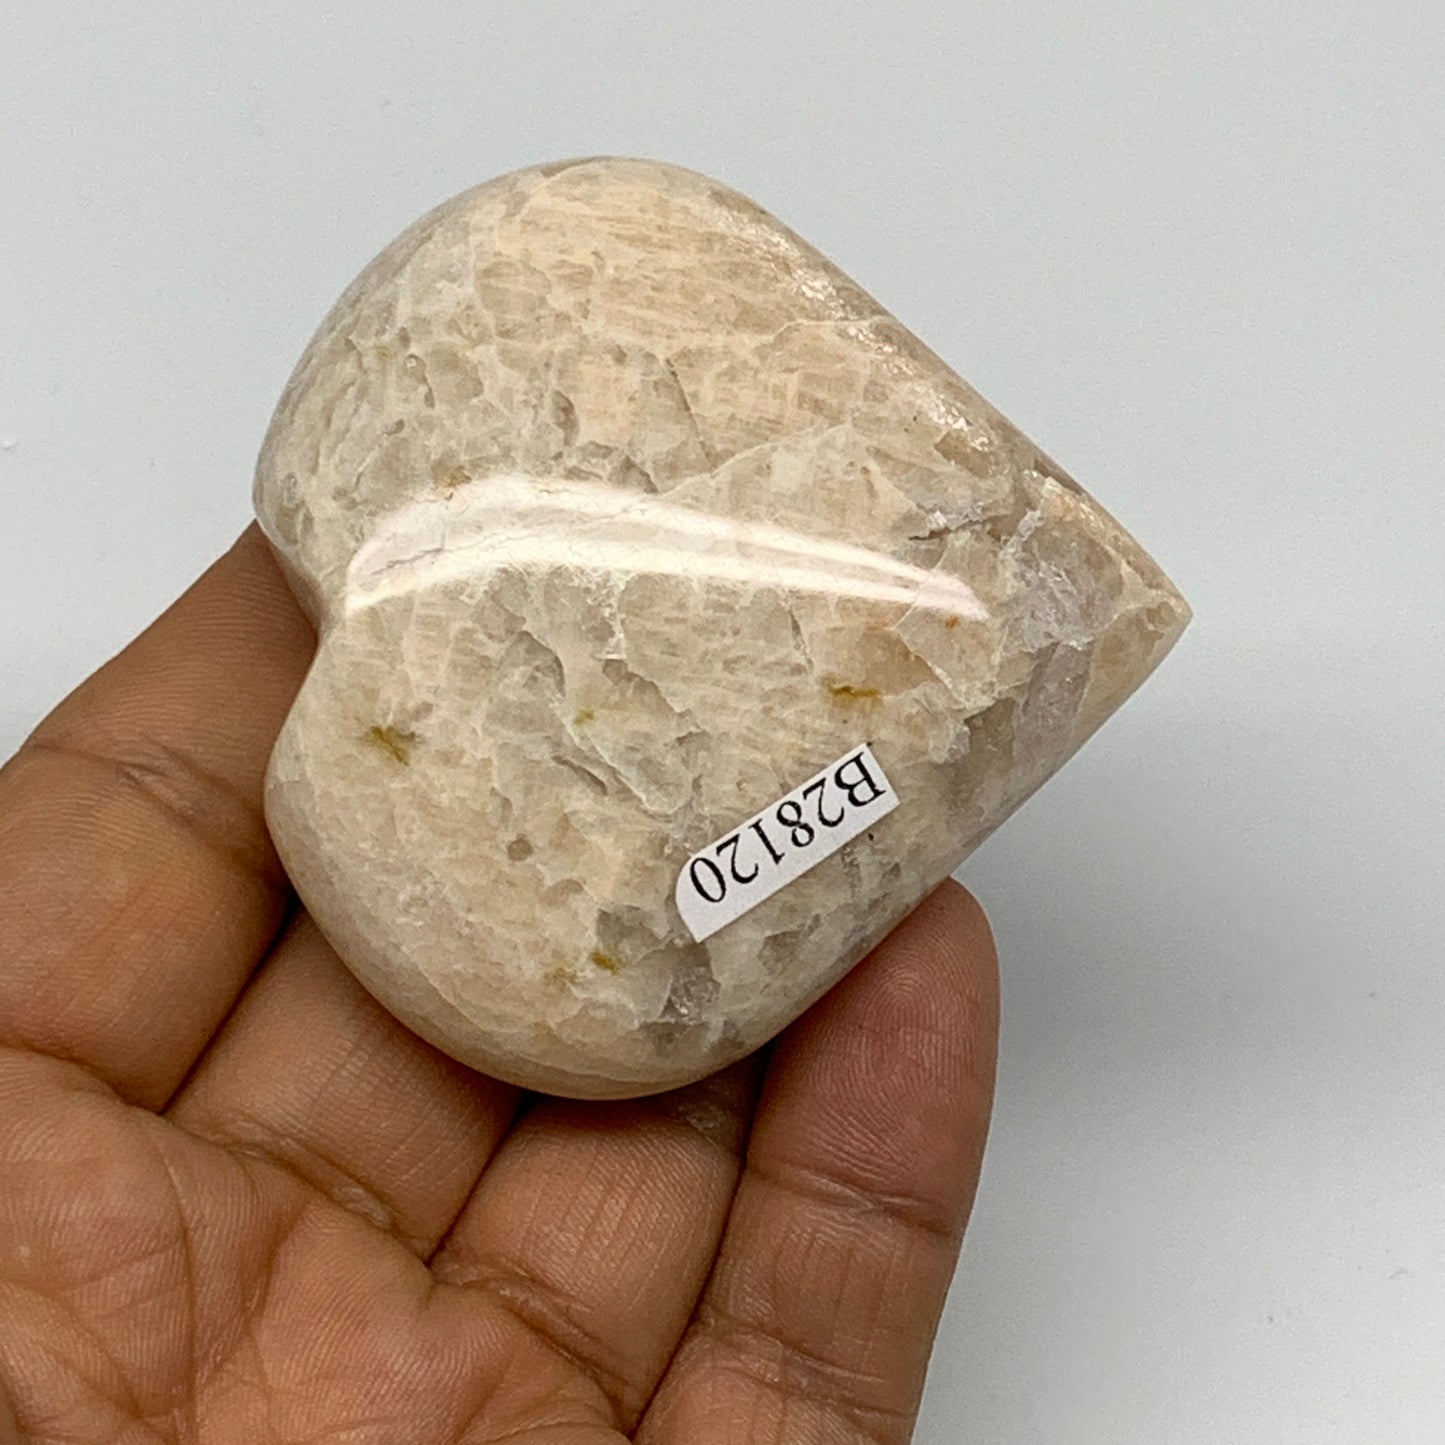 99.7g, 2.3"x2.4"x0.9", Peach Moonstone Heart Crystal Polished Gemstone, B28120